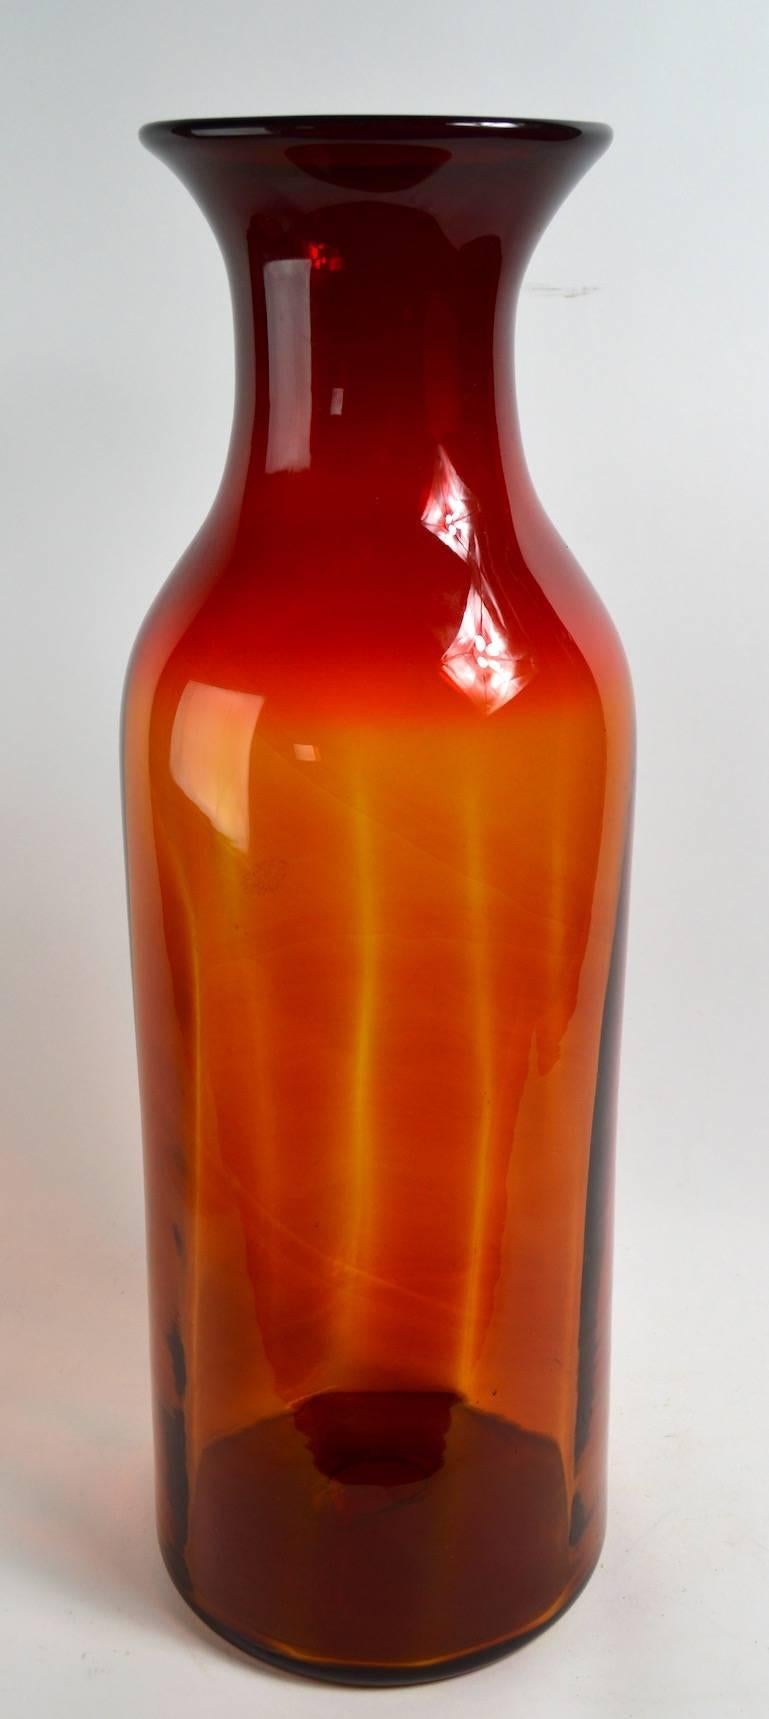 Große, Blenko zugeschriebene Glasvase mit rotem bis orangefarbenem Farbverlauf. Schöner Originalzustand, keine Beschädigungen.